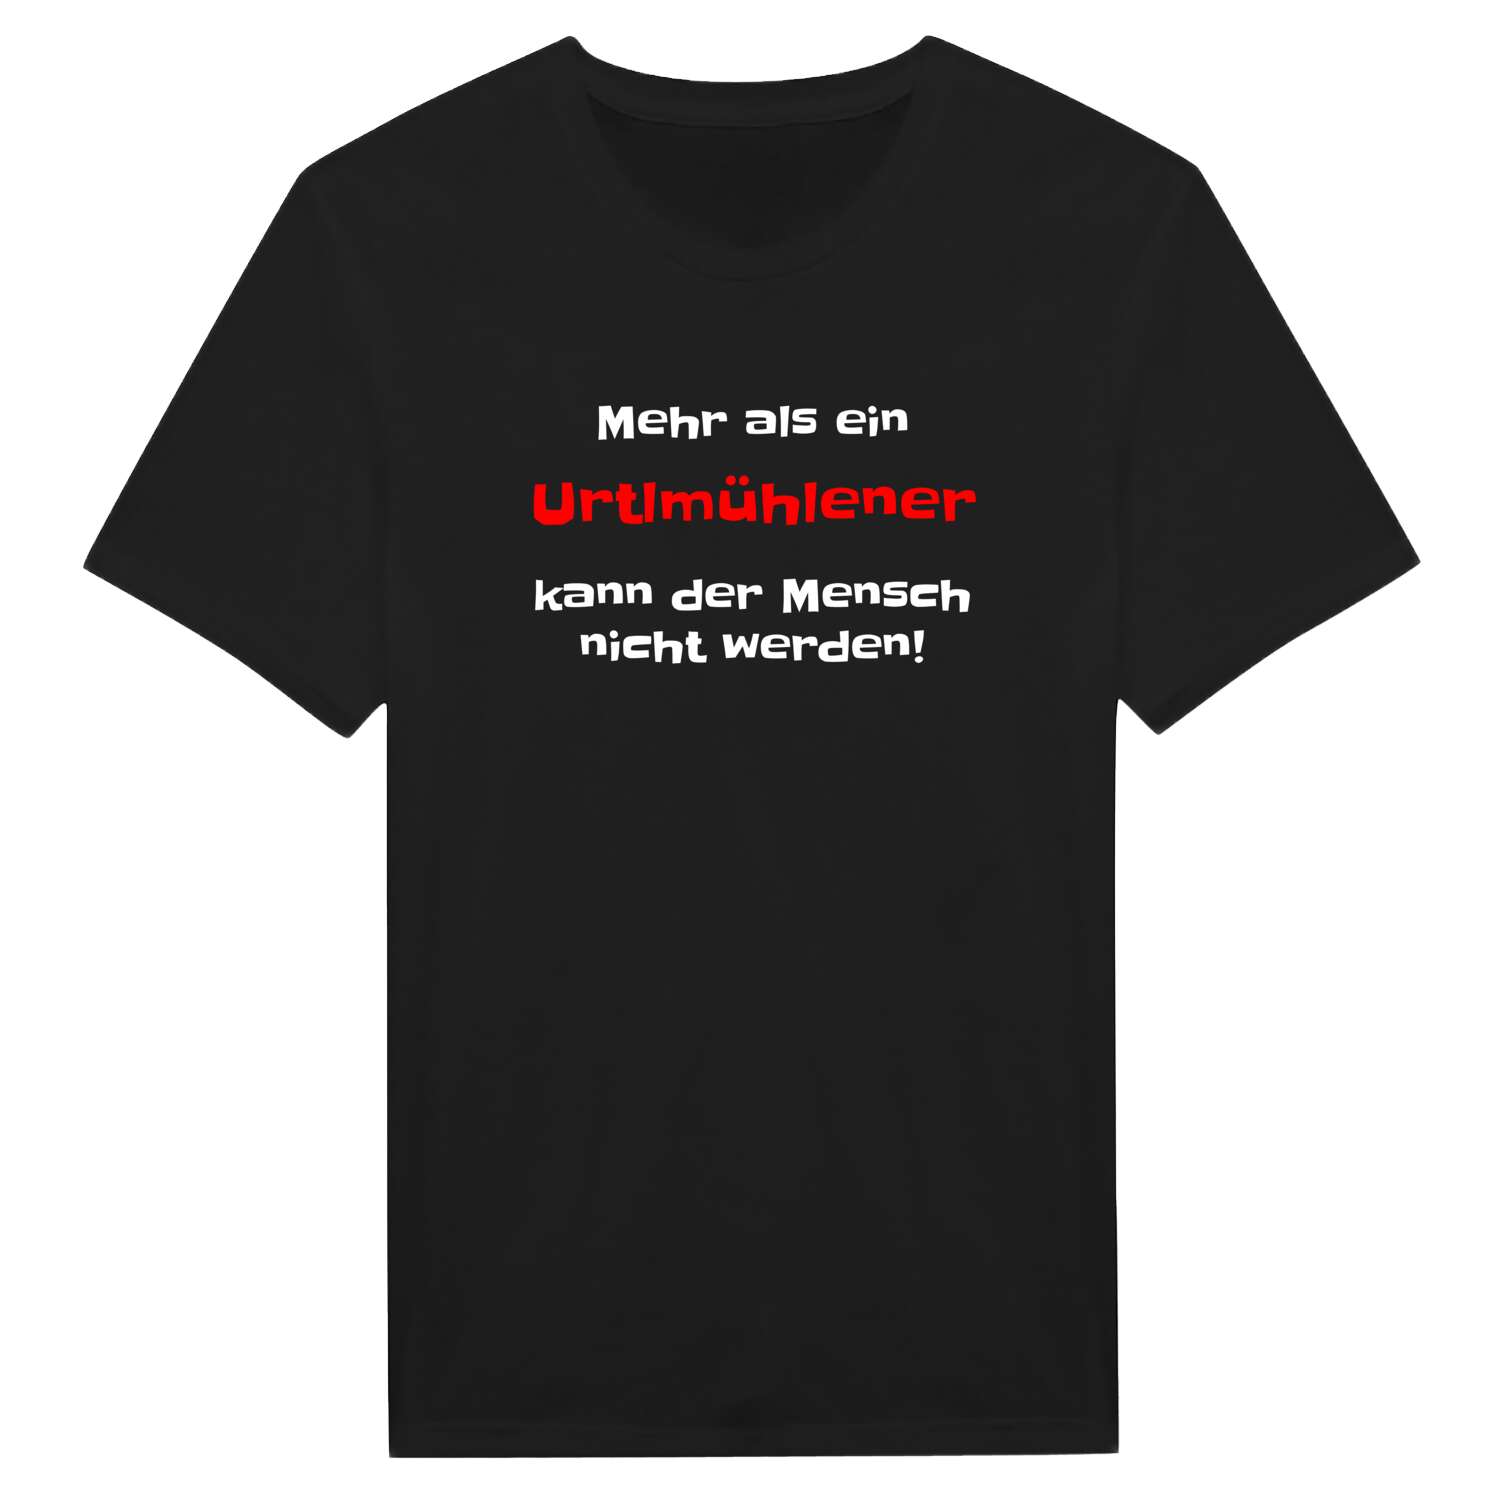 Urtlmühle T-Shirt »Mehr als ein«